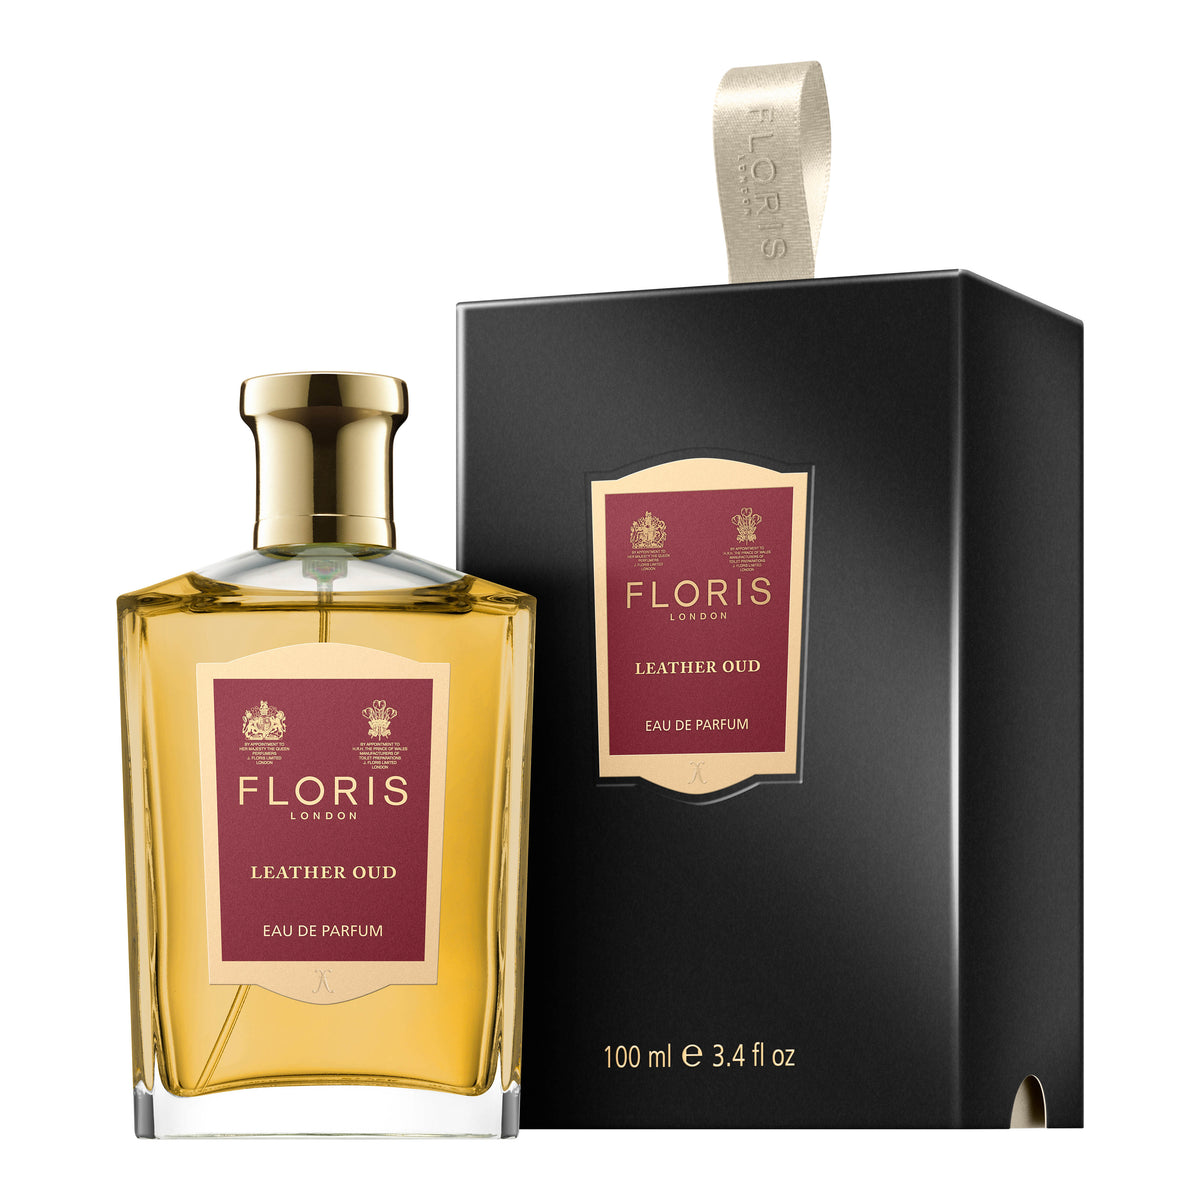 Floris London Leather Oud Eau de Parfum - 100 ml - Eau de Parfum